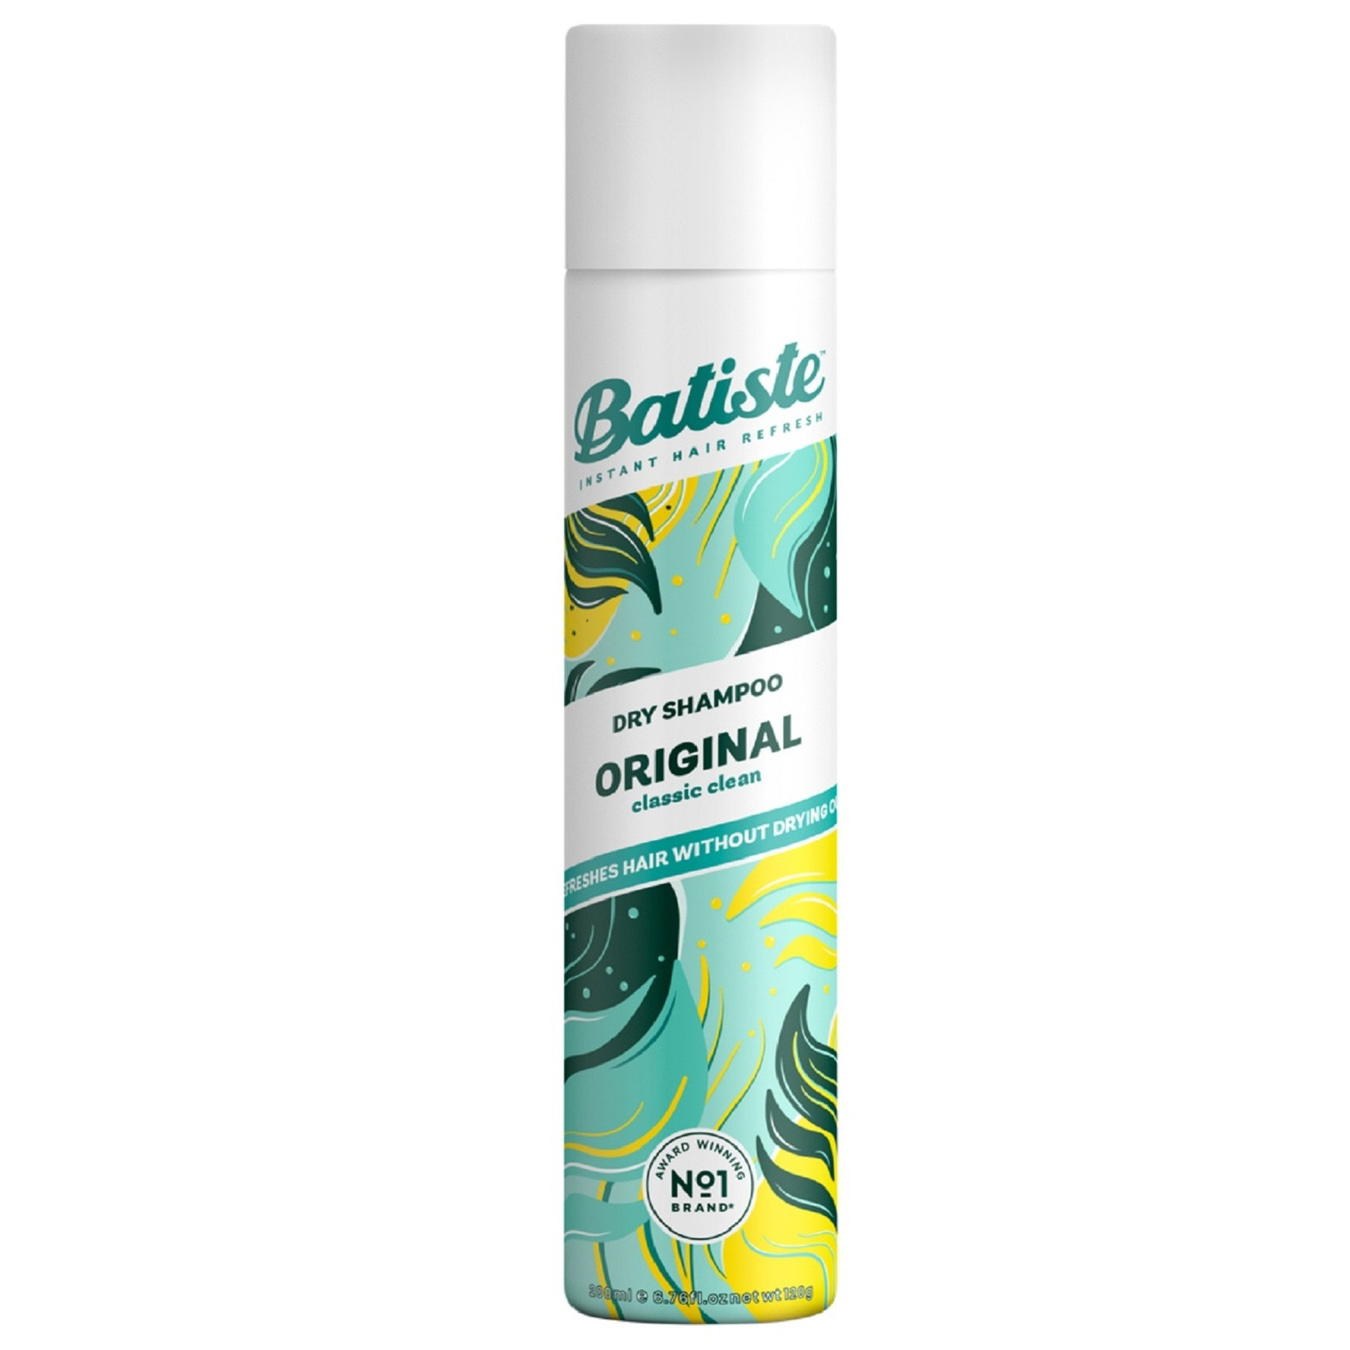 Batiste Original dry shampoo 200ml